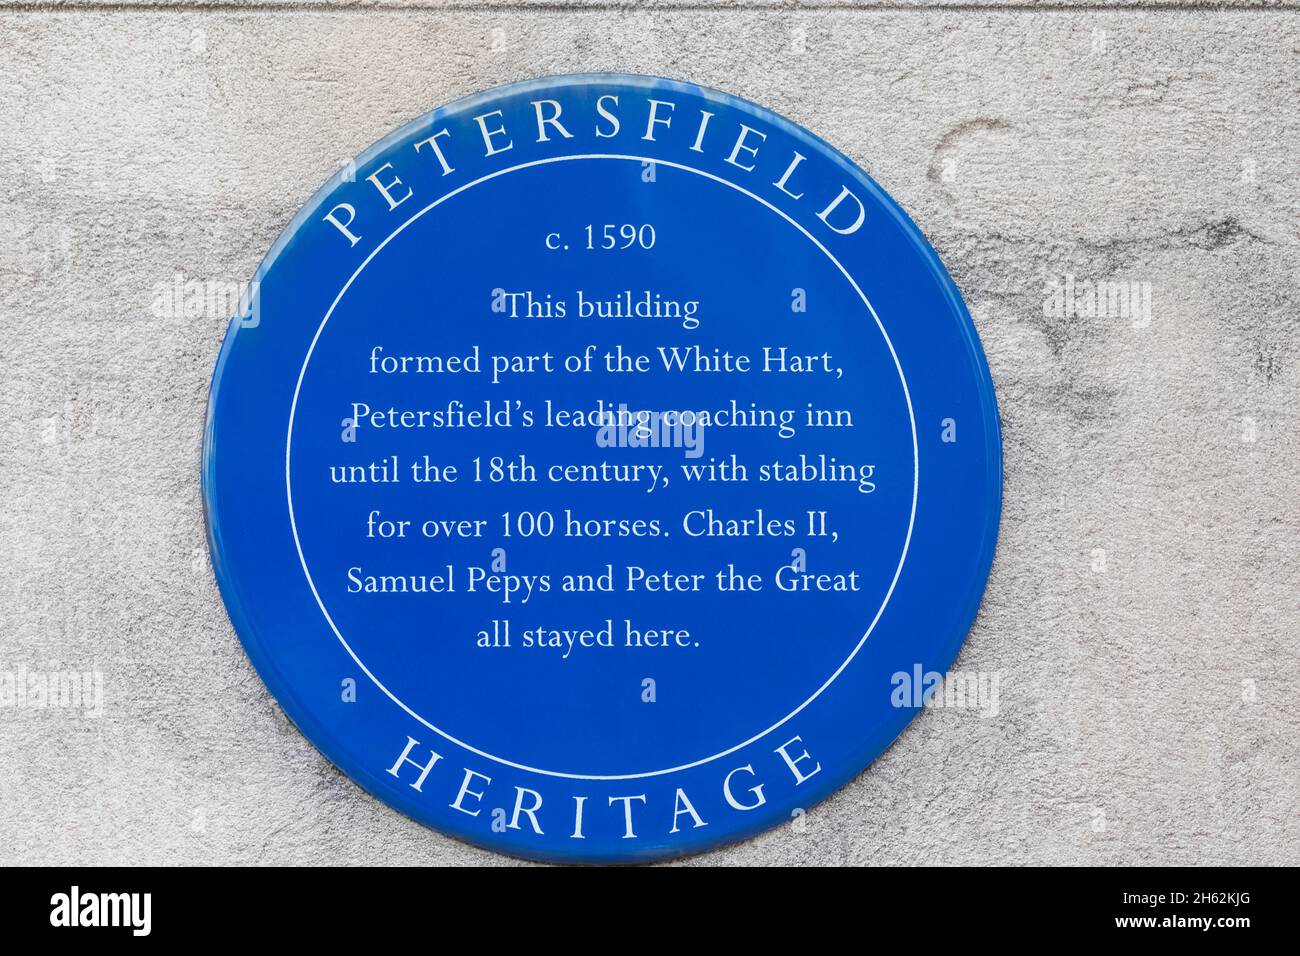 inglaterra,hampshire,petersfield,placa azul que indica la historia de un edificio que una vez fue parte del entrenamiento líder de petersfield en el corazón blanco Foto de stock